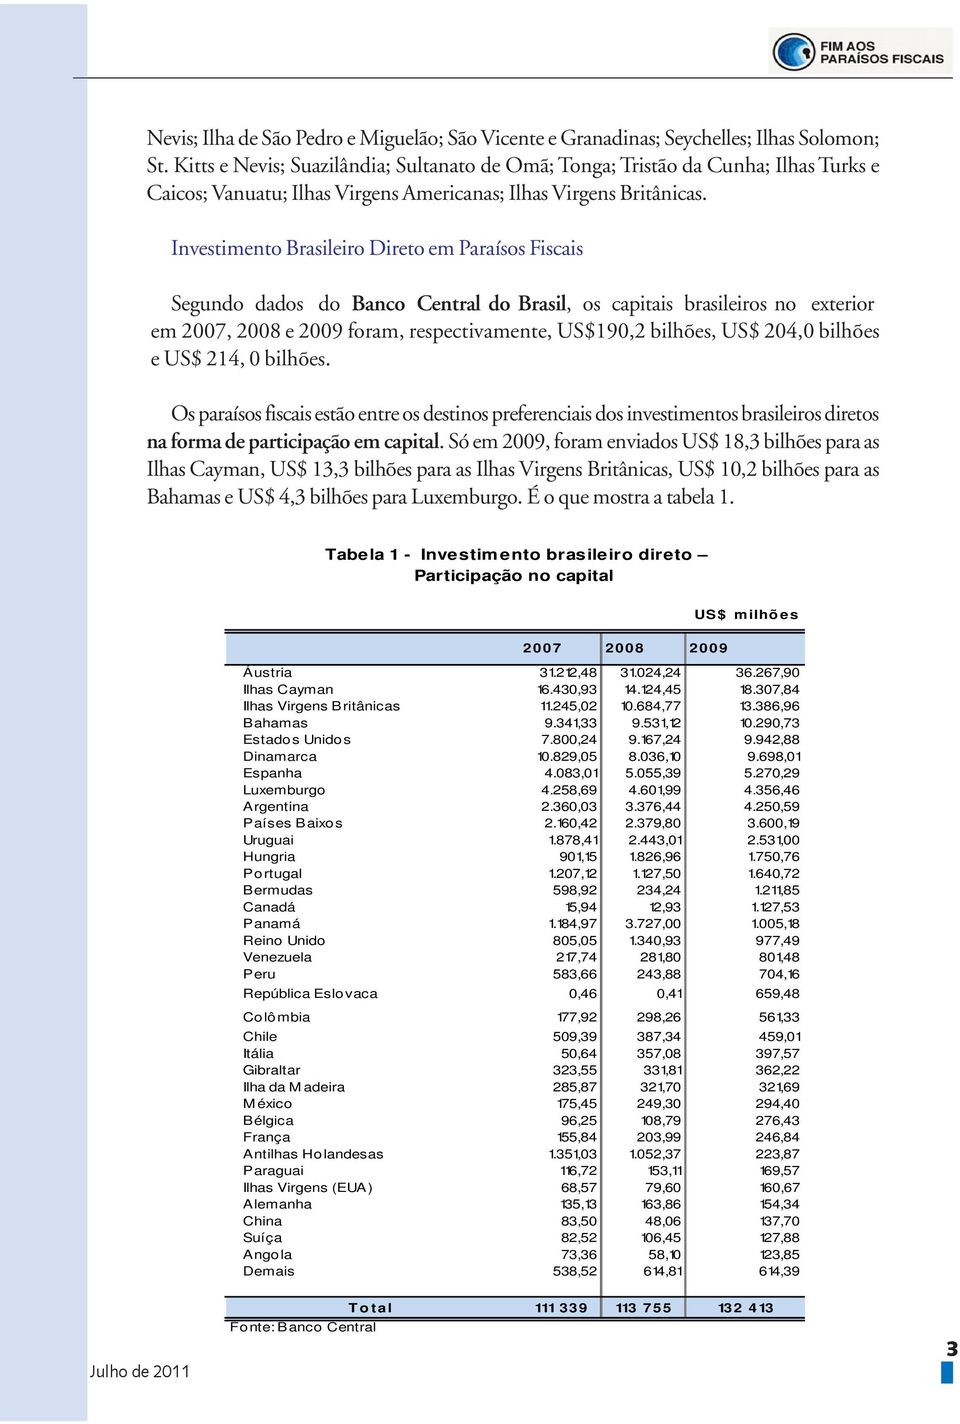 Investimento Brasileiro Direto em Paraísos Fiscais Segundo dados do Banco Central do Brasil, os capitais brasileiros no exterior em 2007, 2008 e 2009 foram, respectivamente, US$190,2 bilhões, US$